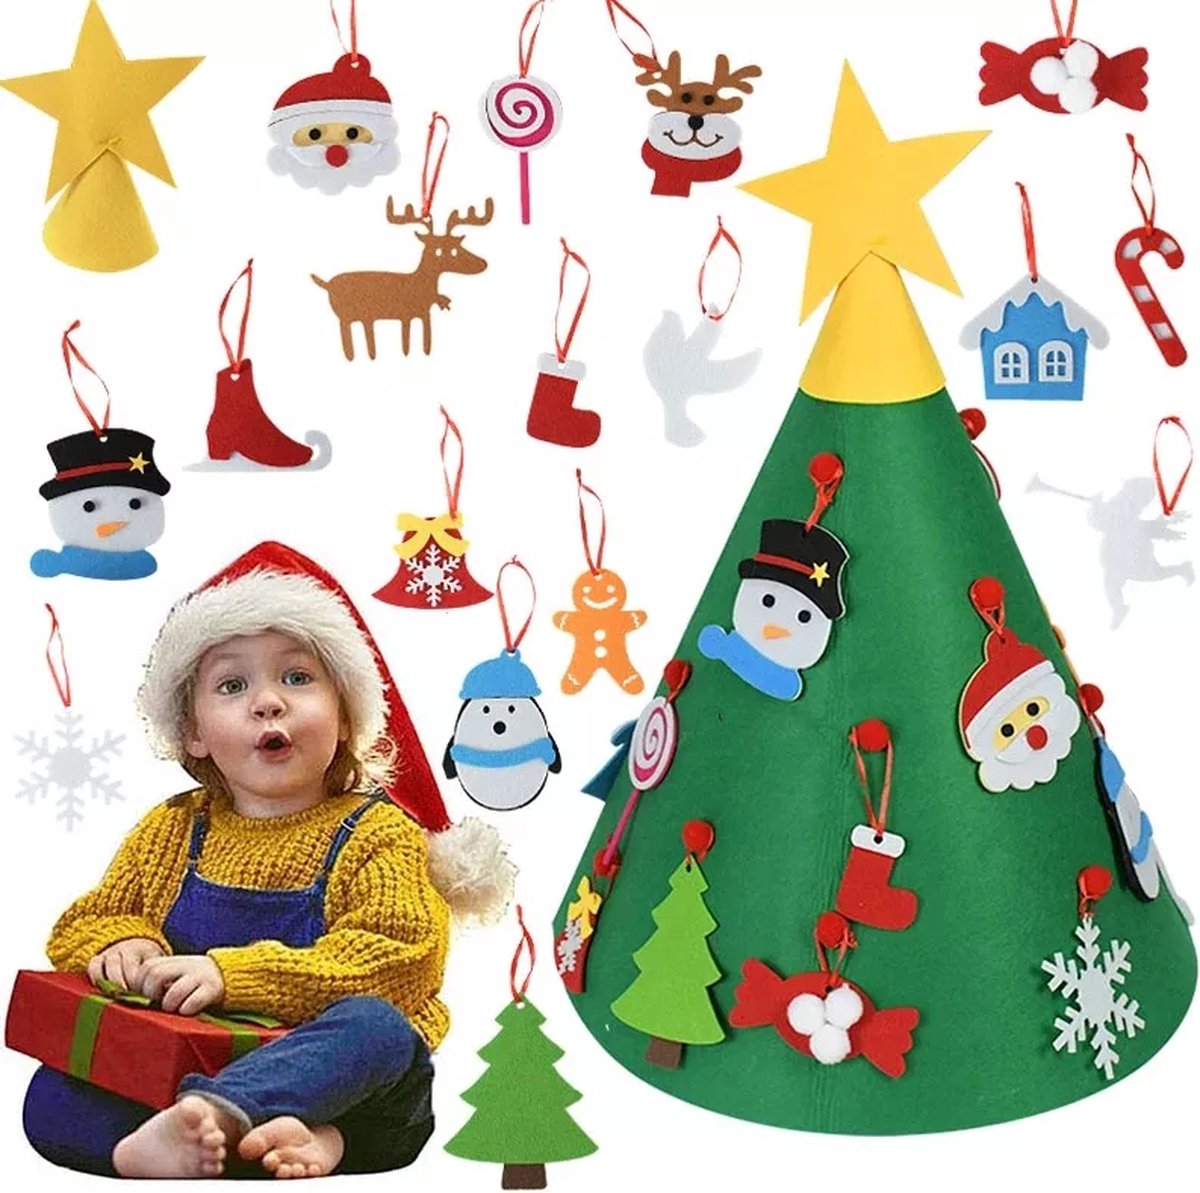 Baby`s Eerste Kerstboom - Vilten Kerstboom - Baby`s First Christmastree - Kinder Kerstboom Vilt - Incl Accessoires - Complete Kerstboom voor Kinderen - Kerstdecoratie - Merry Christmas -